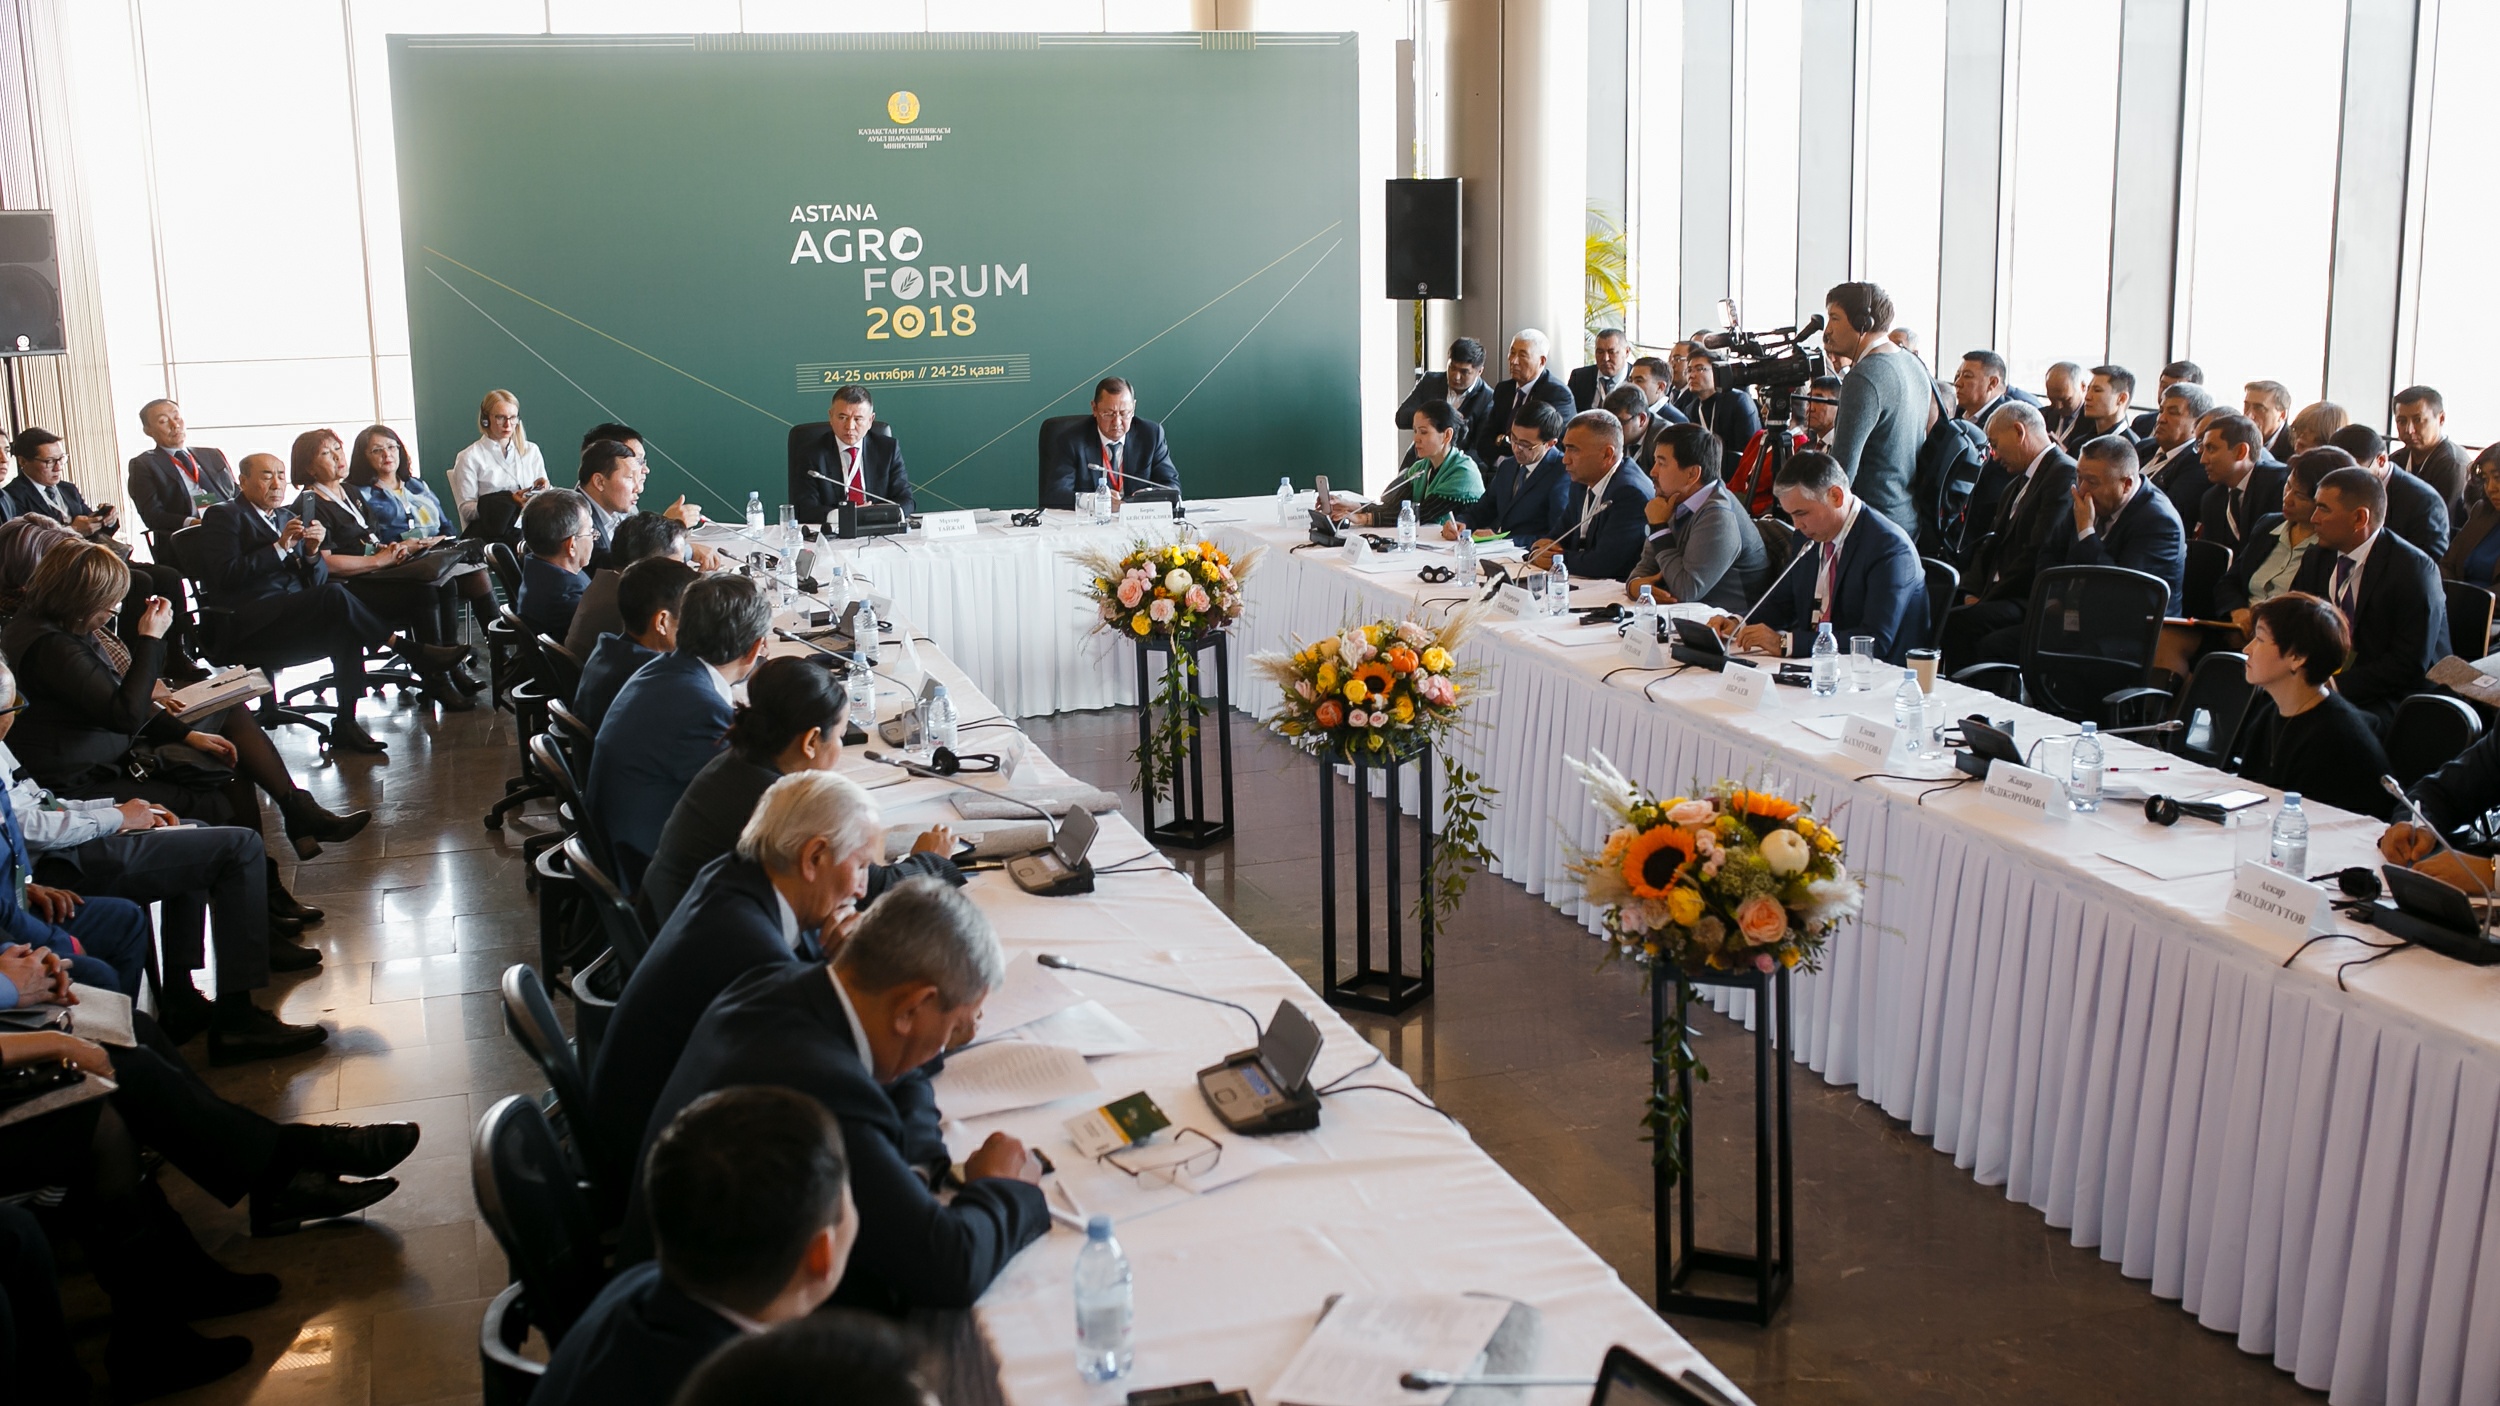 В столице проходит масштабный республиканский форум Astana Agro Forum 2018